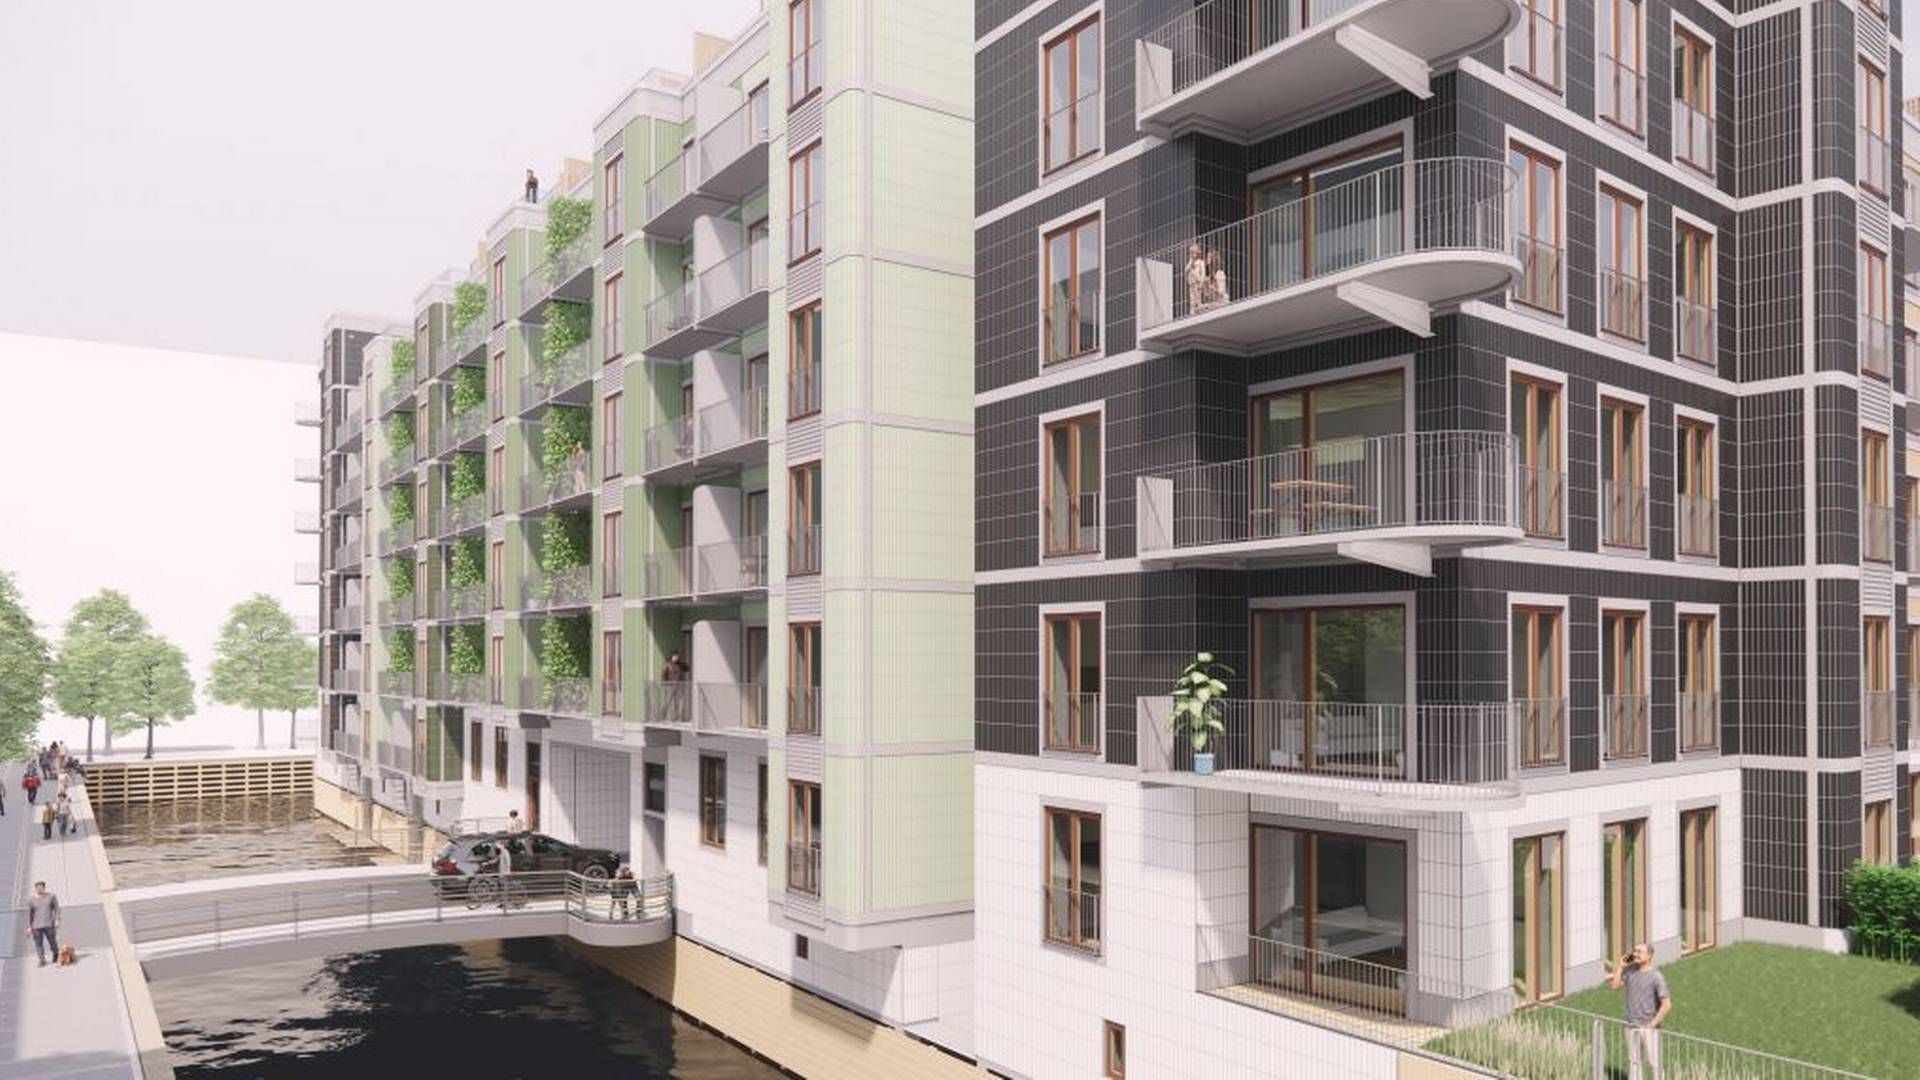 Flere nye boligprojekter er på vej i Sluseholmen. De 229 ejerboliger skal bygges på Metrogrunden. Metroen forventes åbnet i 2024. | Foto: PR-visualisering / Over Byen Arkitekter